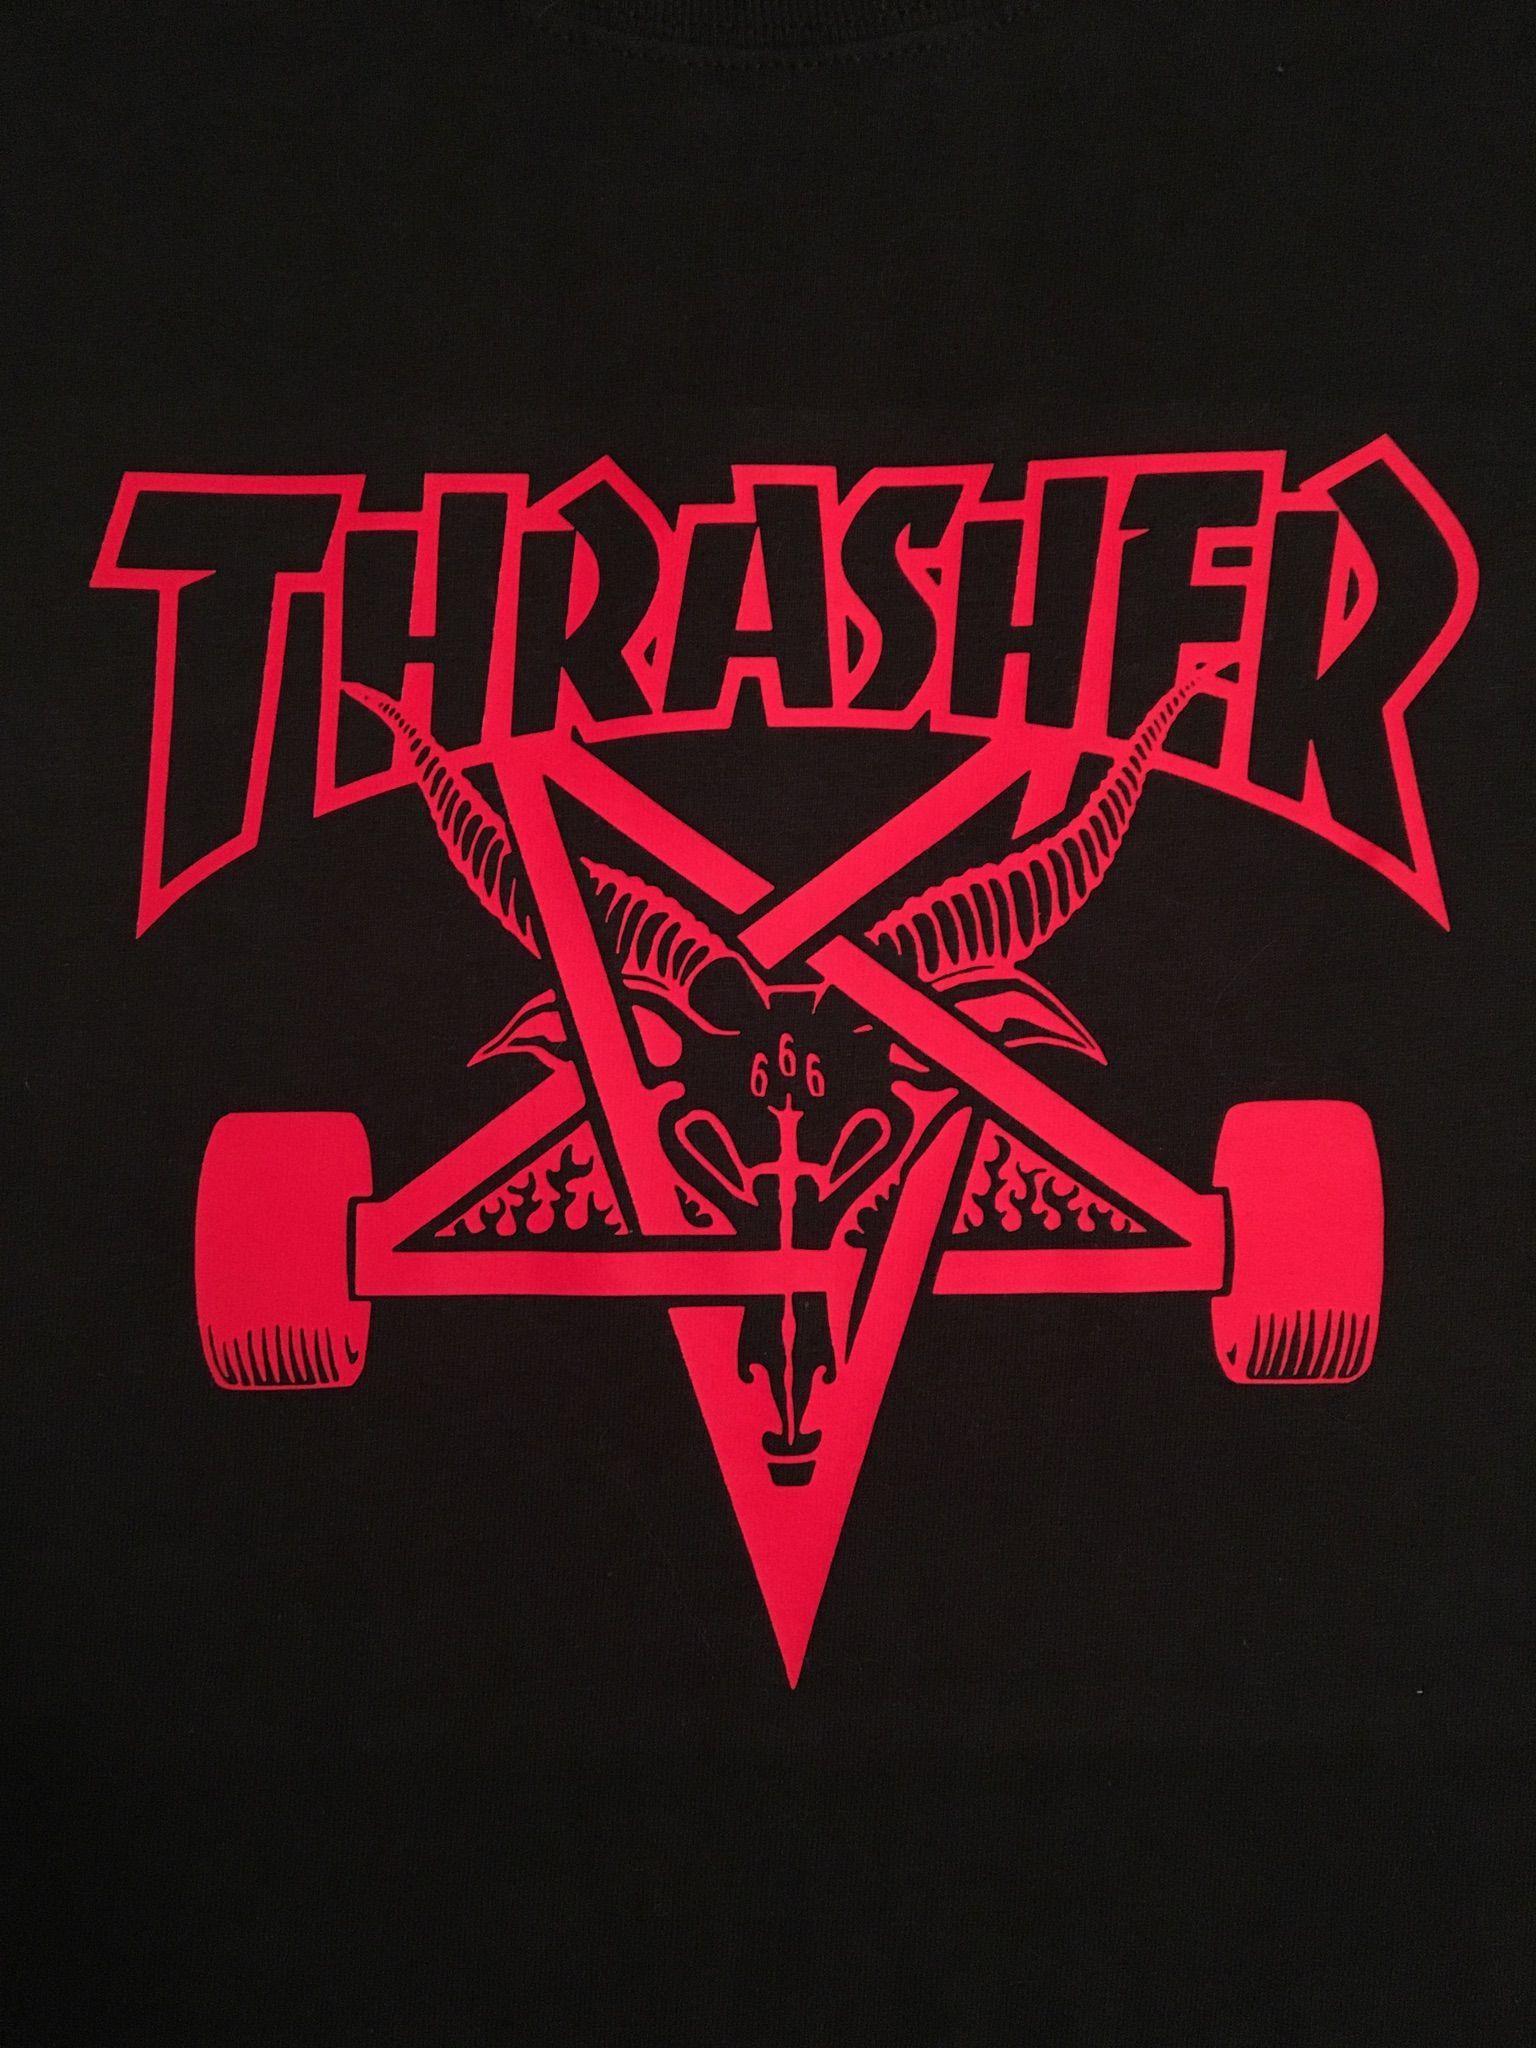 Thrasher Magazine Skate Goat Logo - Thrasher Skateboard Magazine, Skate Goat | DIY shirts in 2019 ...